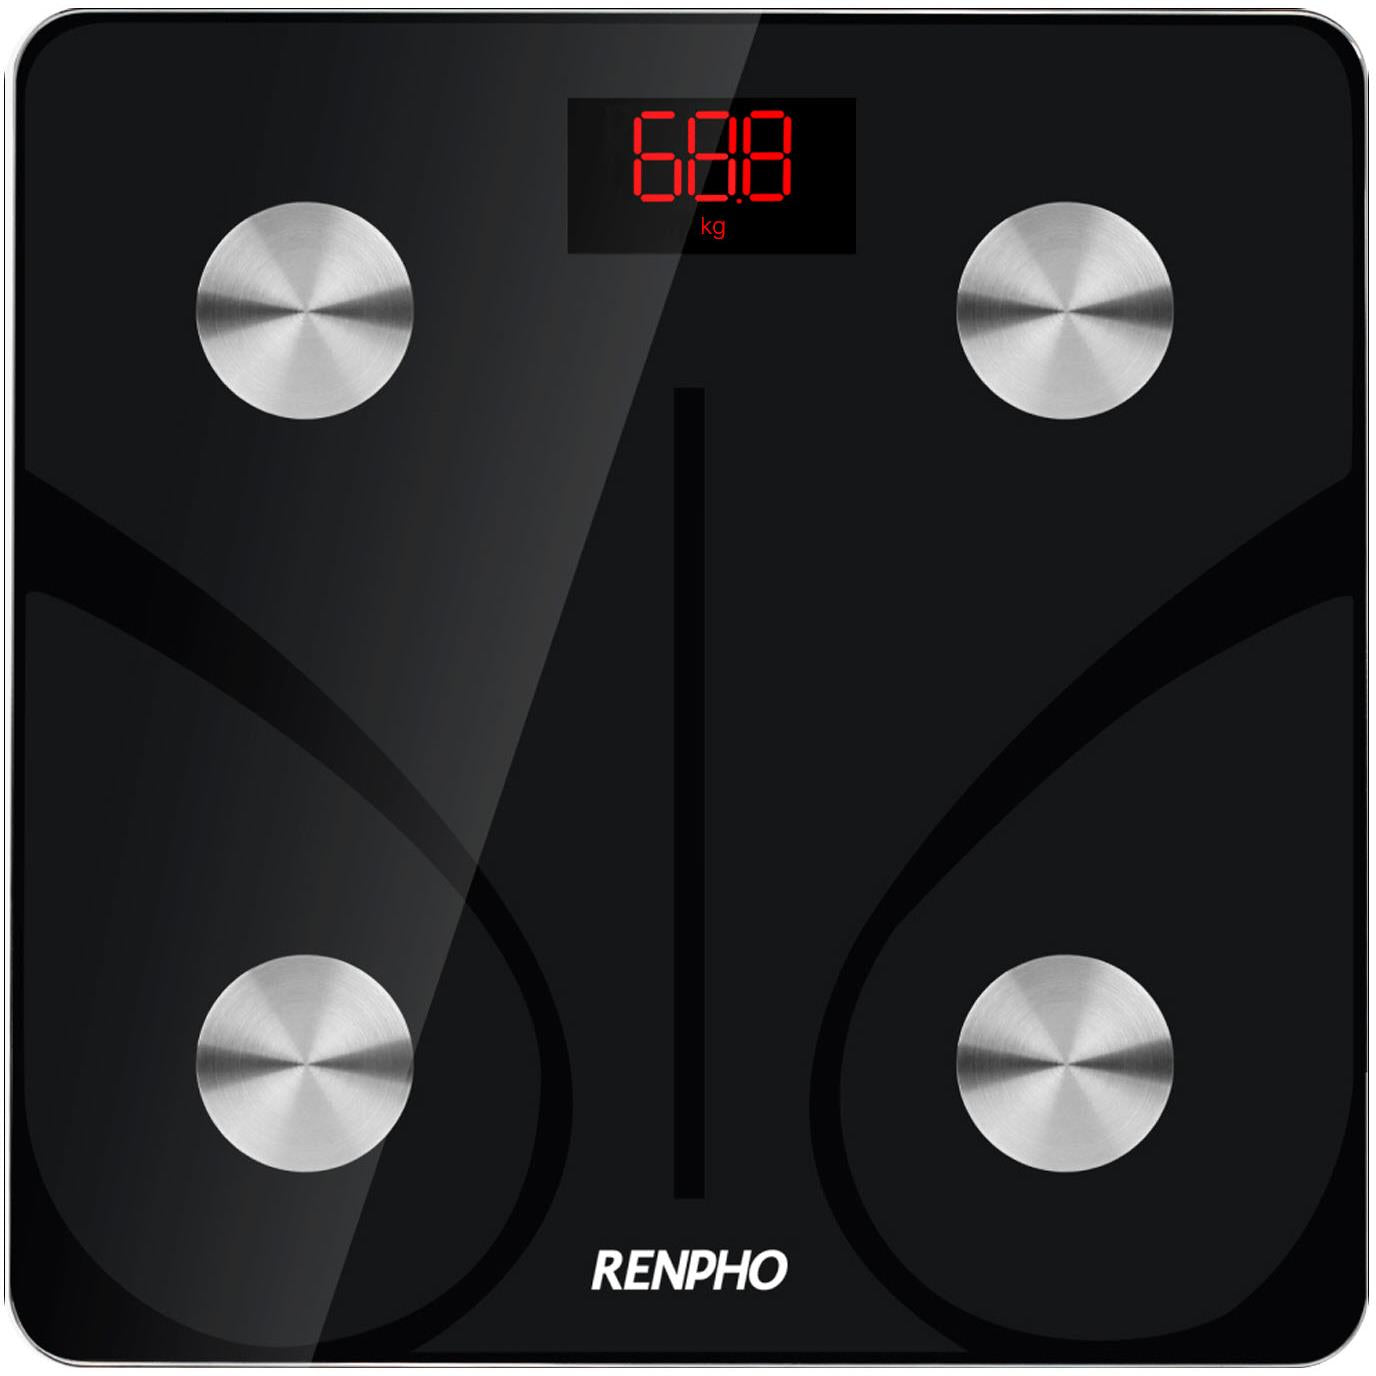 RENPHO Smart Body Scale - JB Hi-Fi